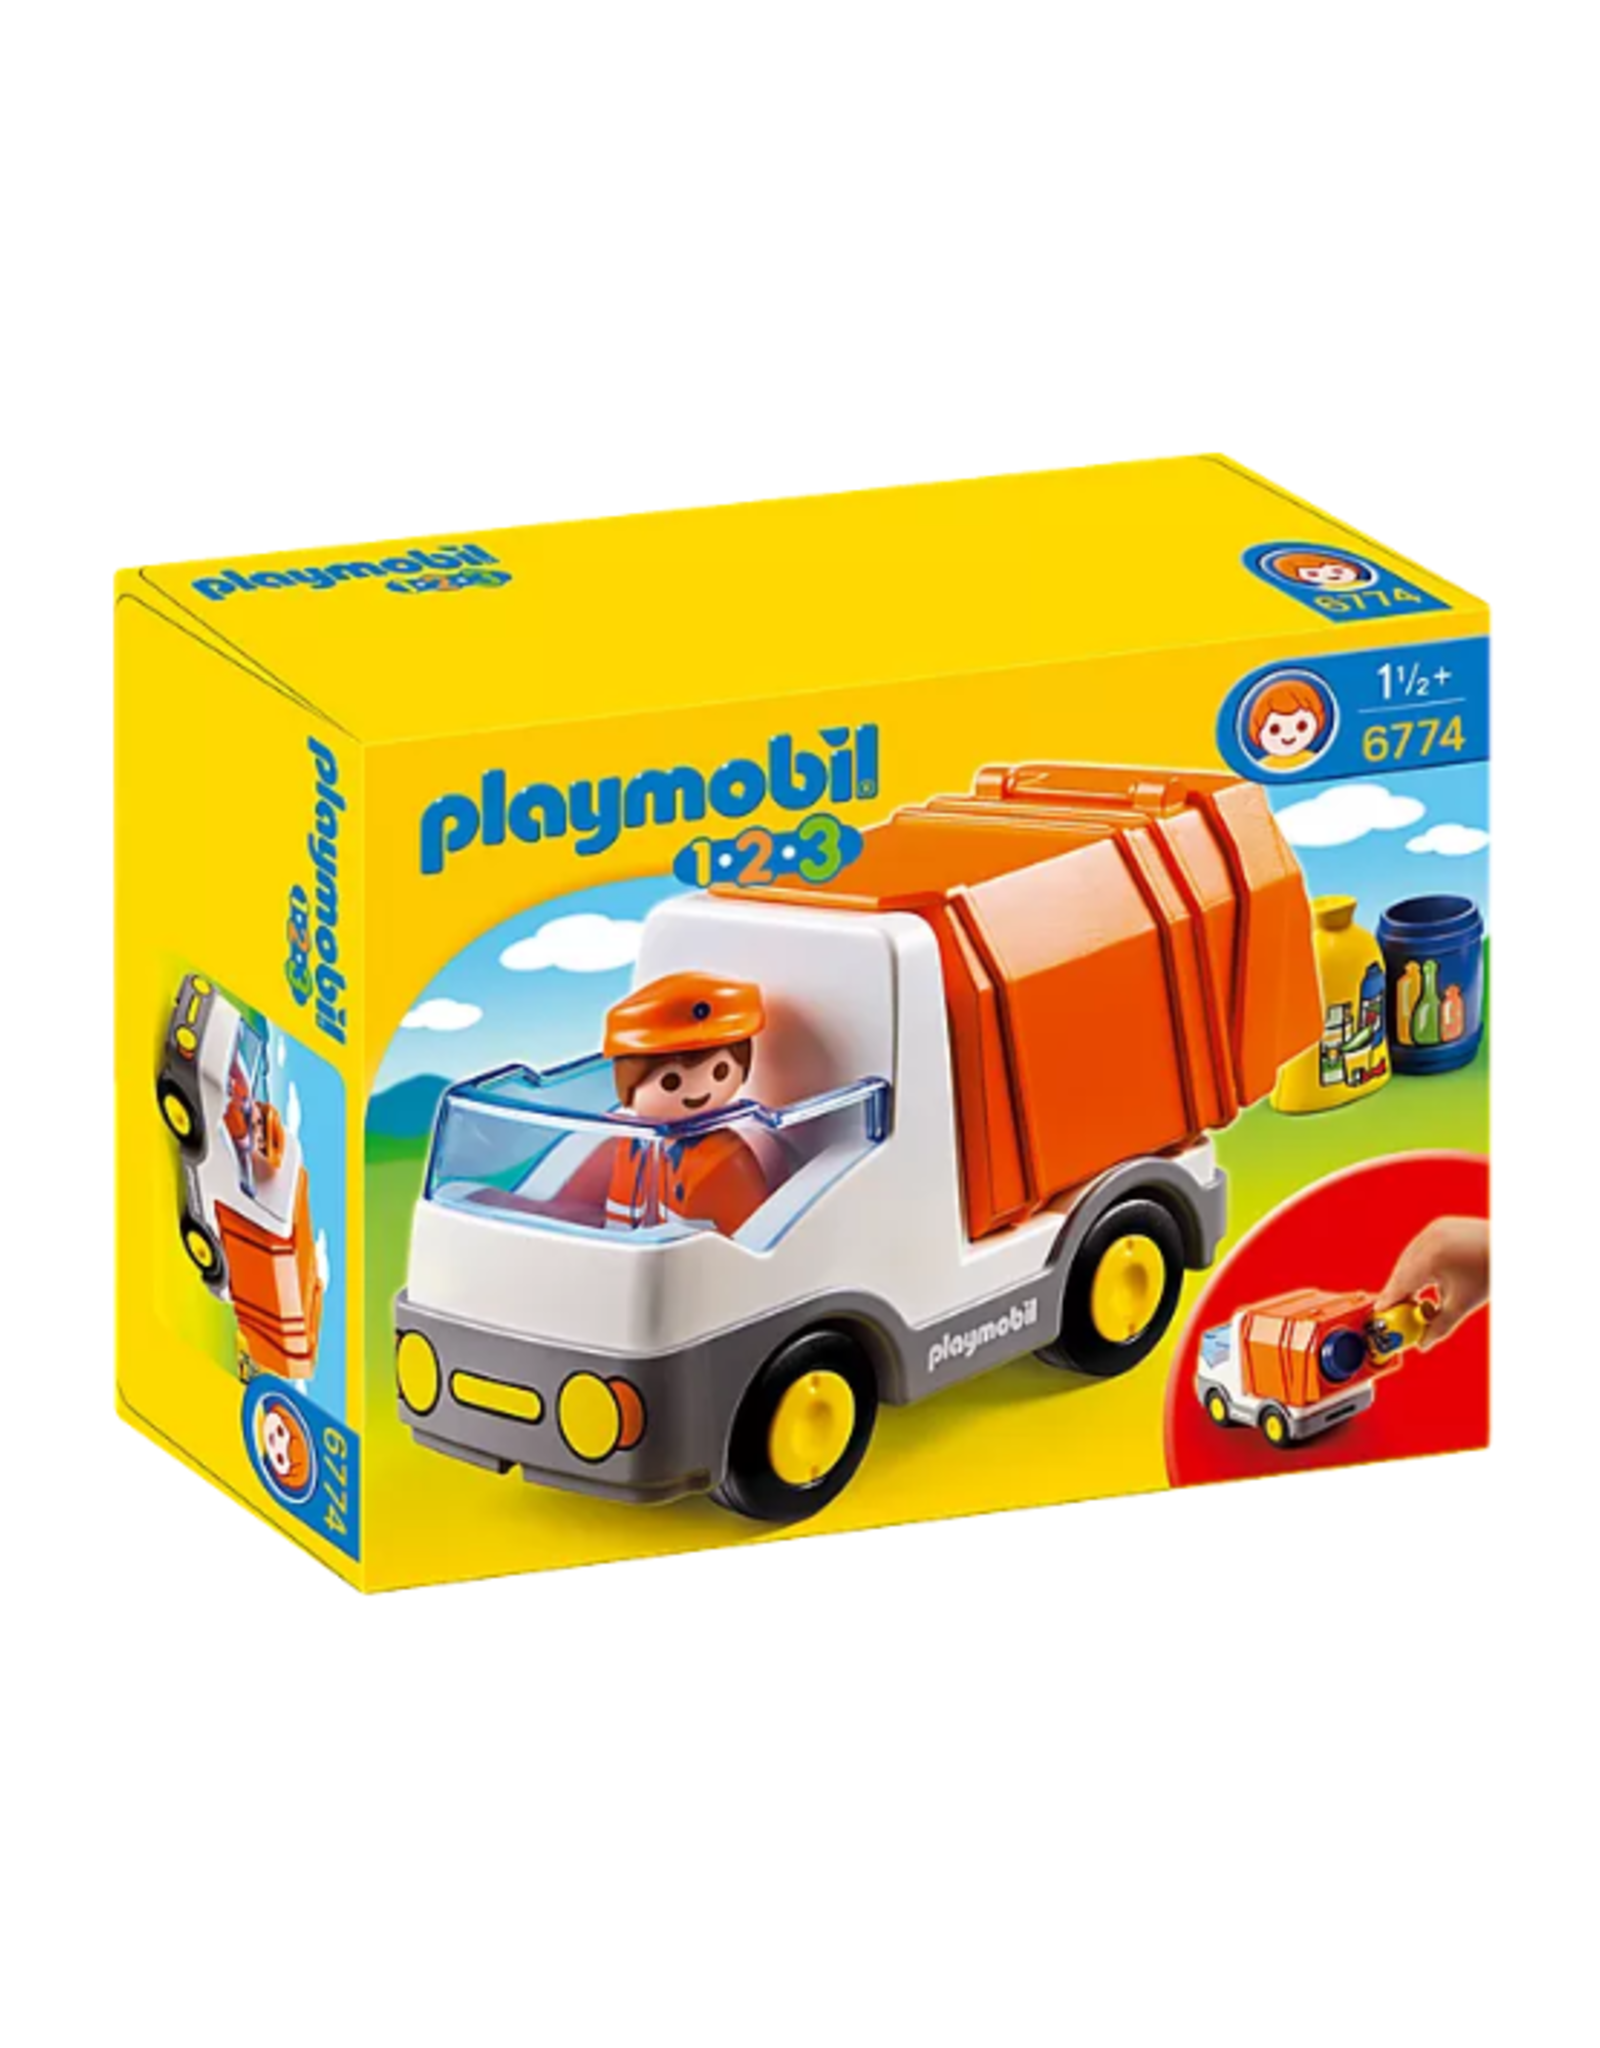 Playmobil Playmobil - 1.2.3 - 6774 - Recycling Truck